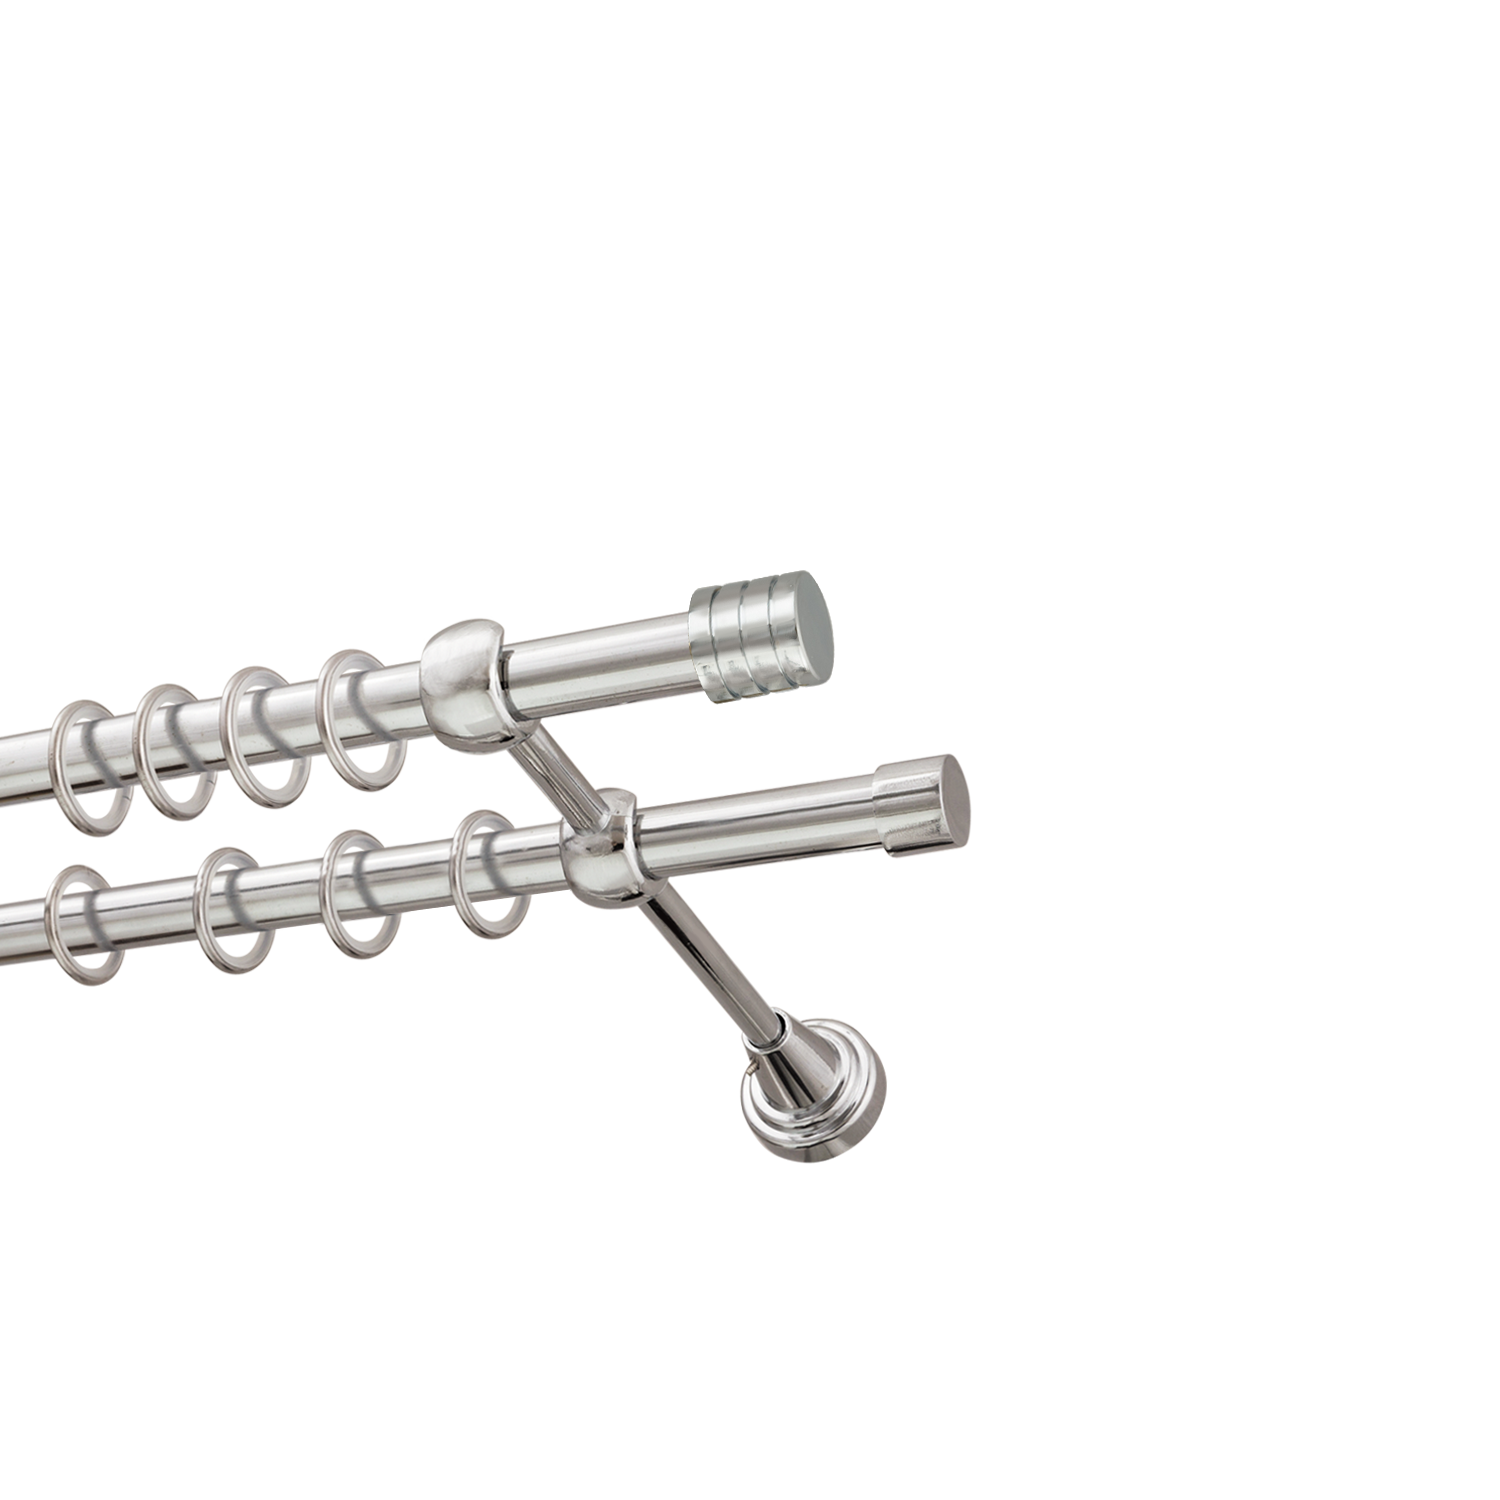 Металлический карниз для штор Подиум, двухрядный 16/16 мм, серебро, гладкая штанга, длина 240 см